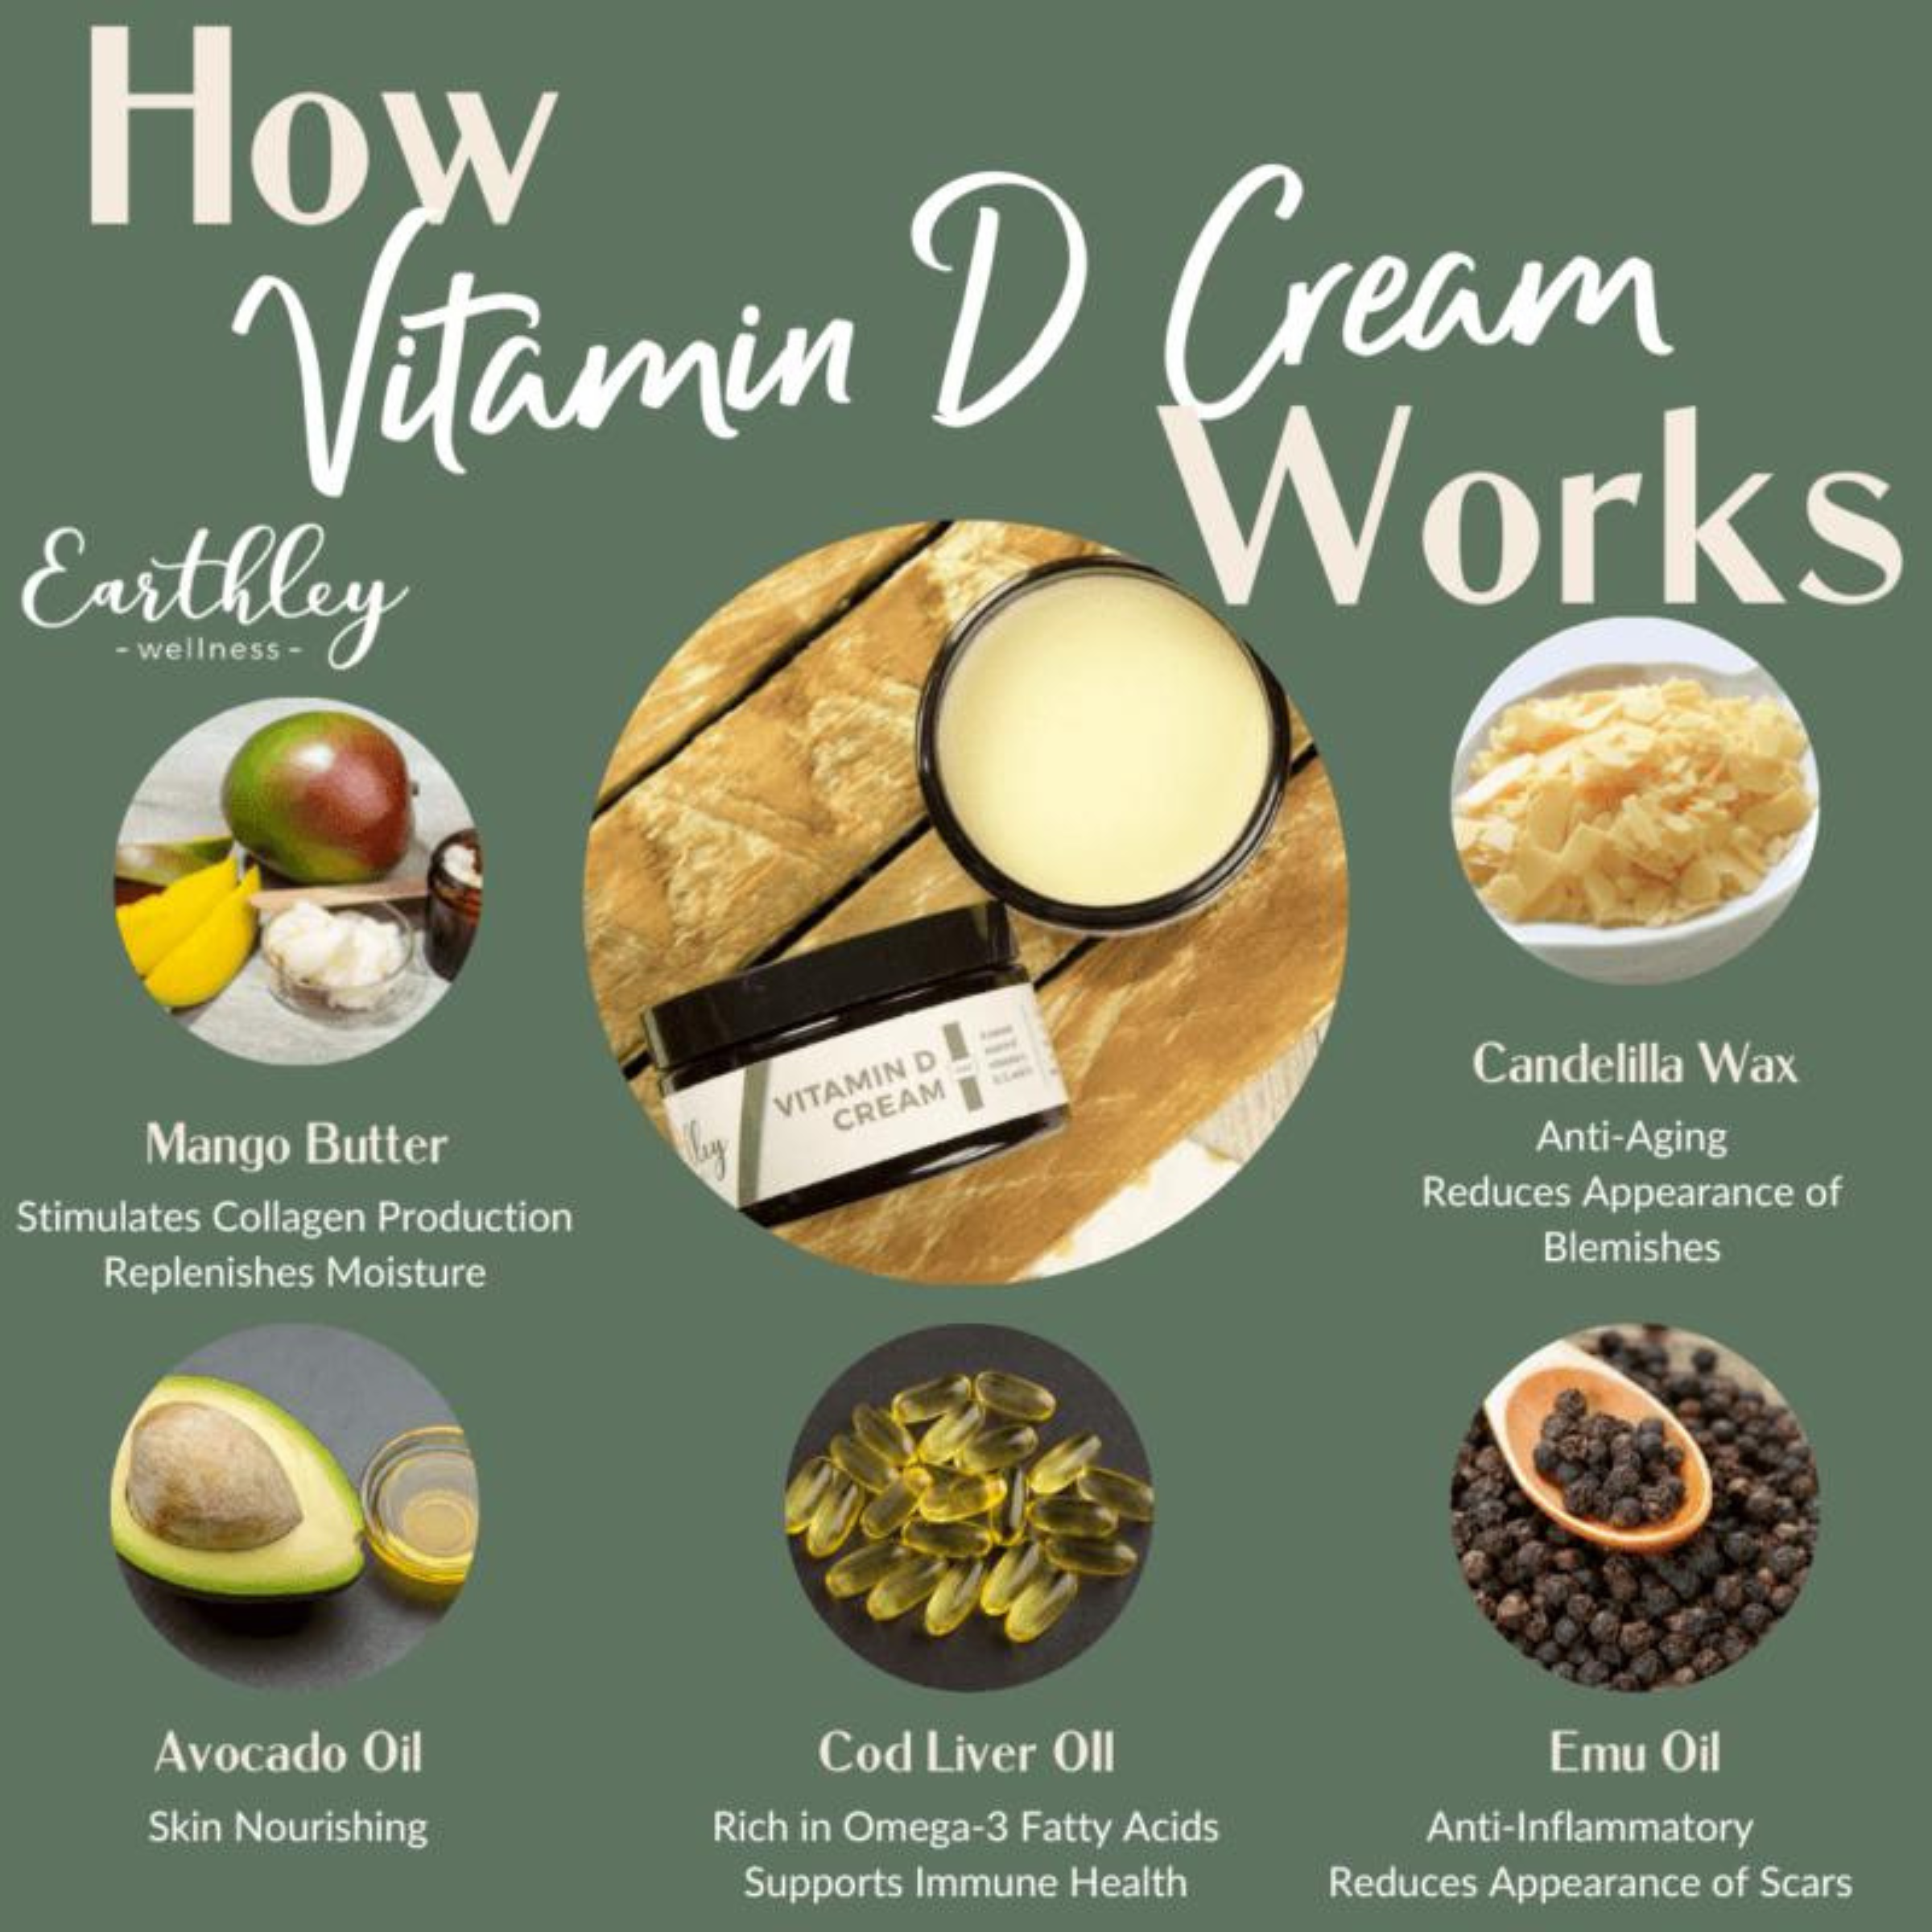 Vitamin D Cream